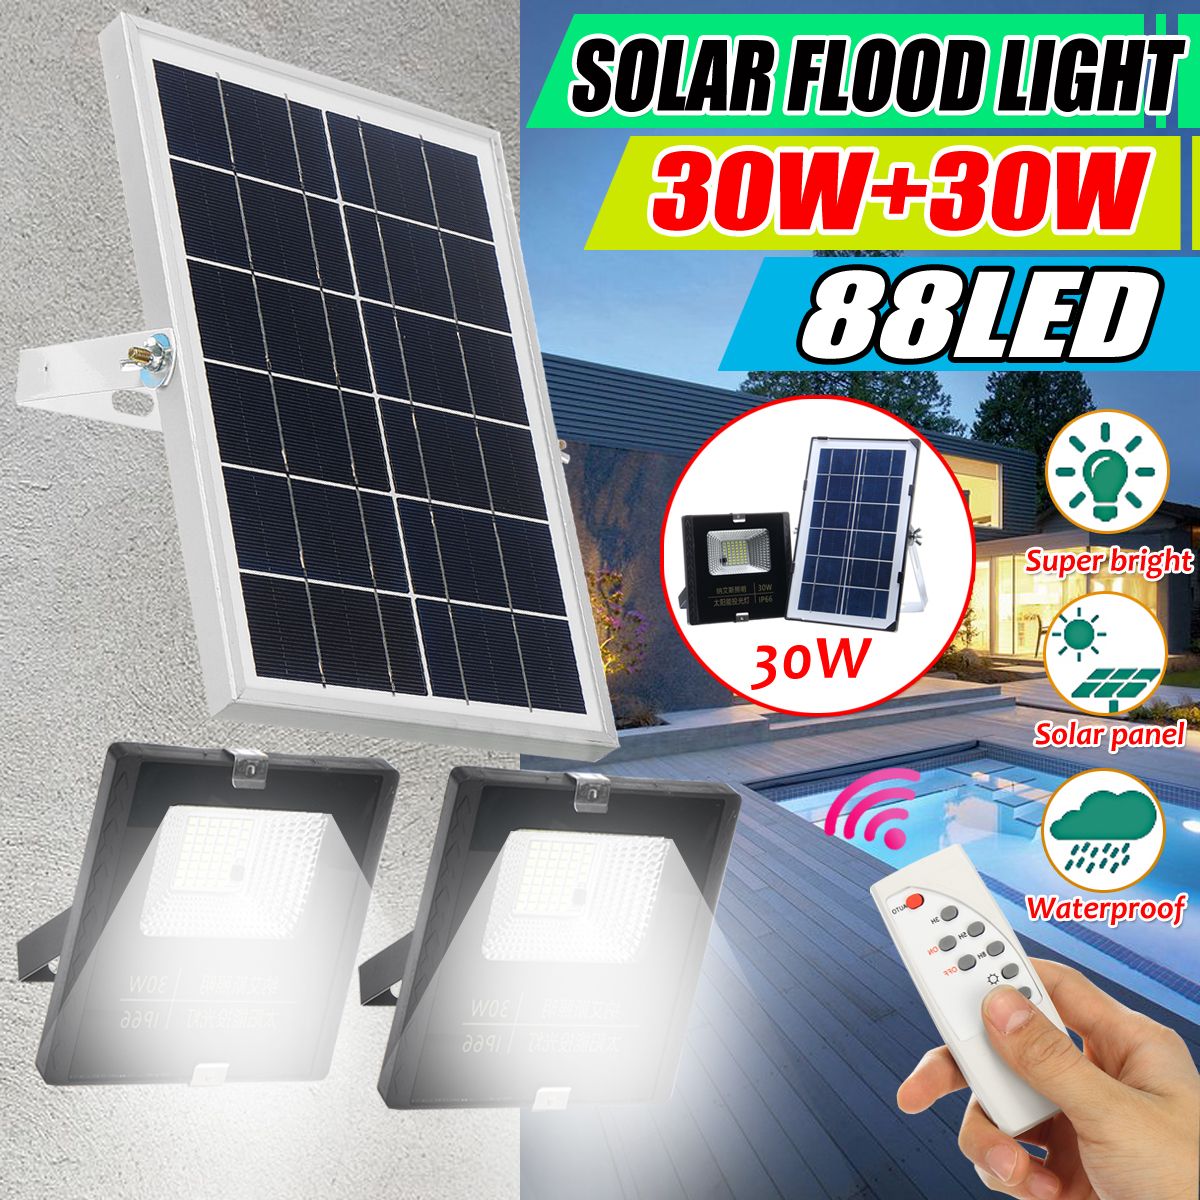 60W-88LED--Solar-Flood-wall-Light-Spotlight-Outdoor-Garden-Yard-Safety-Light-1680372